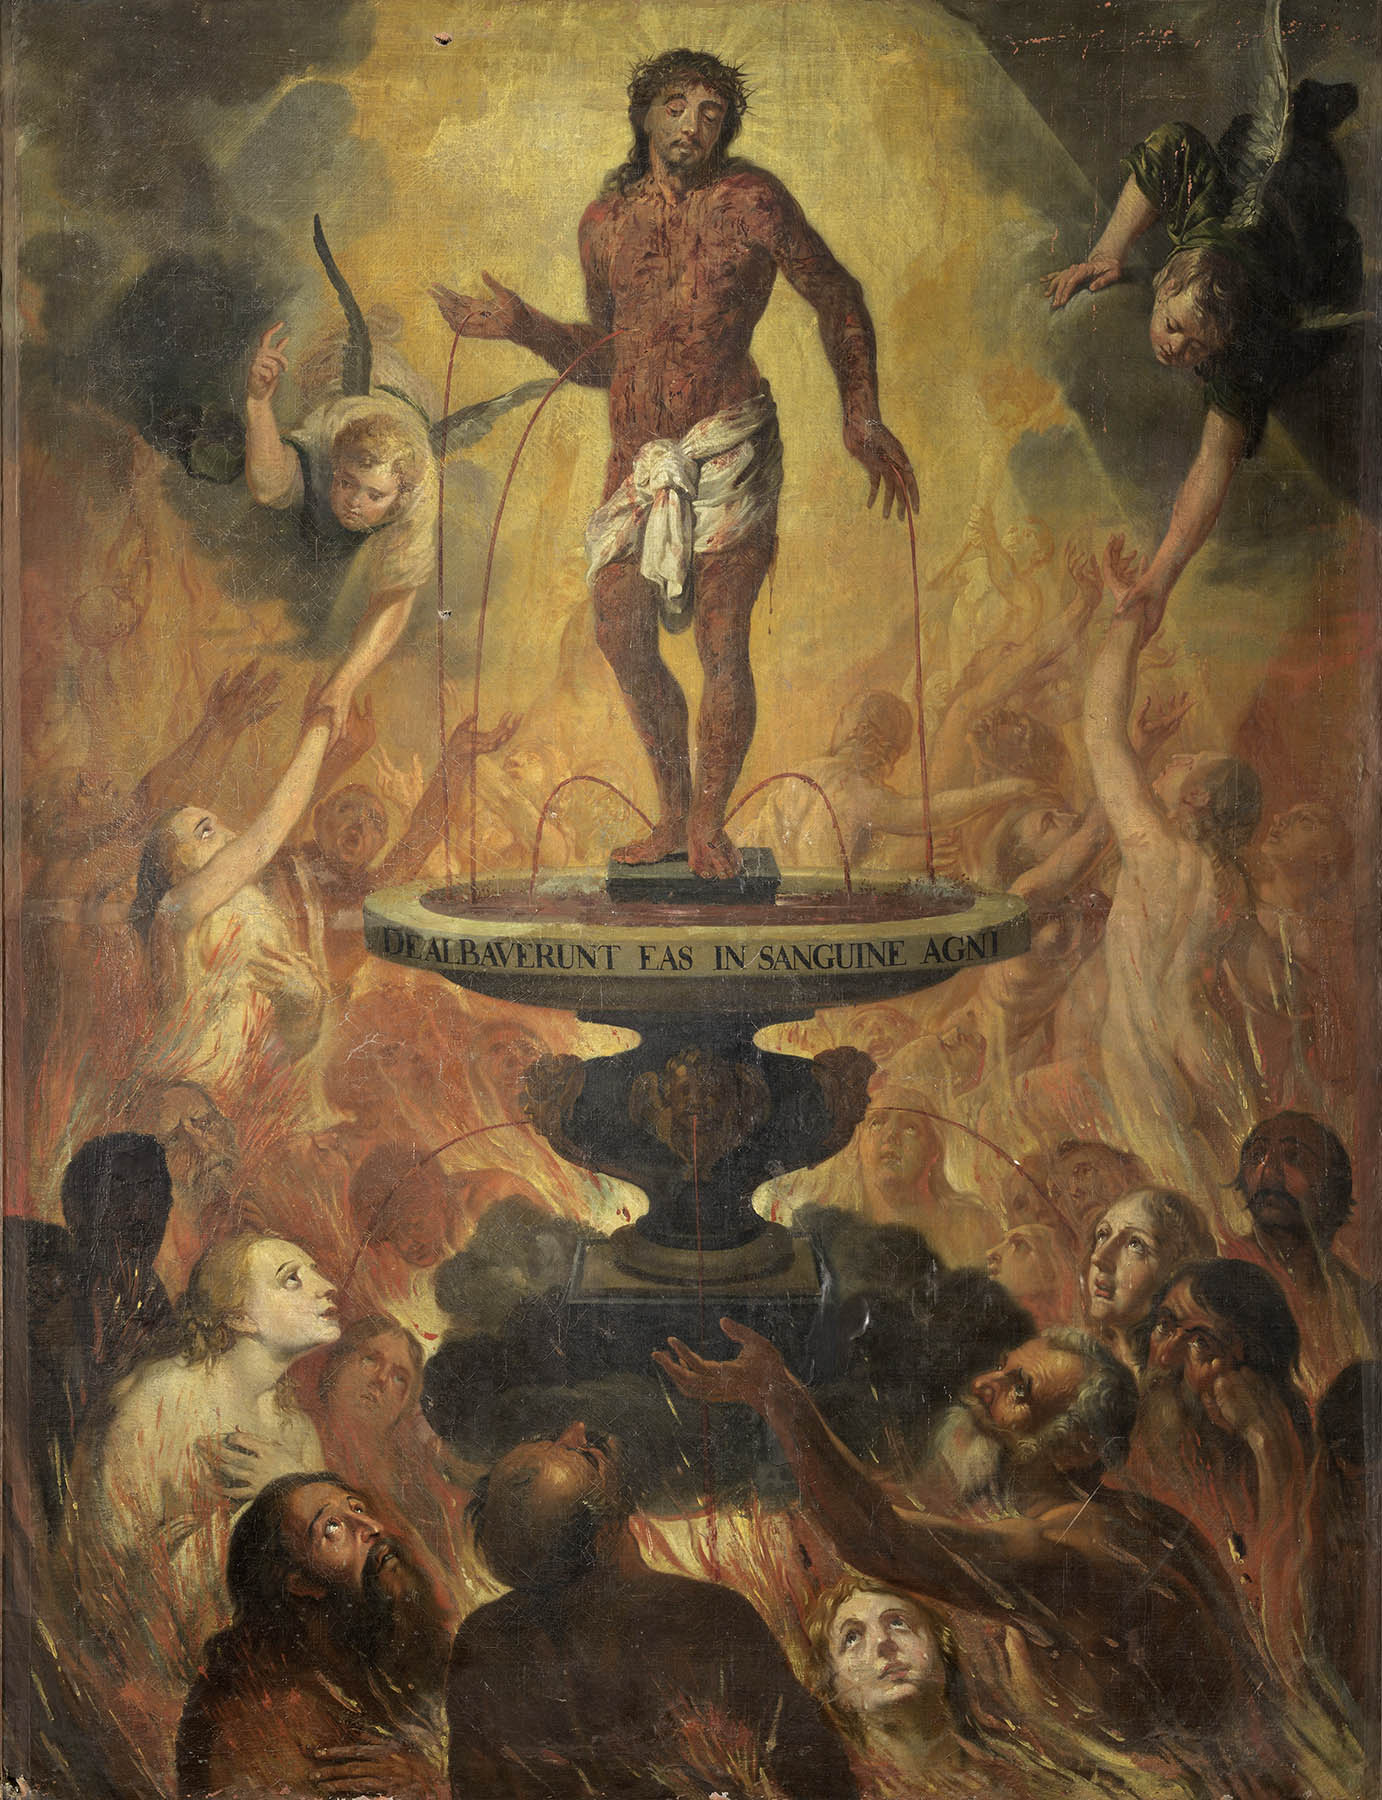 Christus wast met zijn bloed de zielen uit het vagevuur vrij van Vigor Bouquet